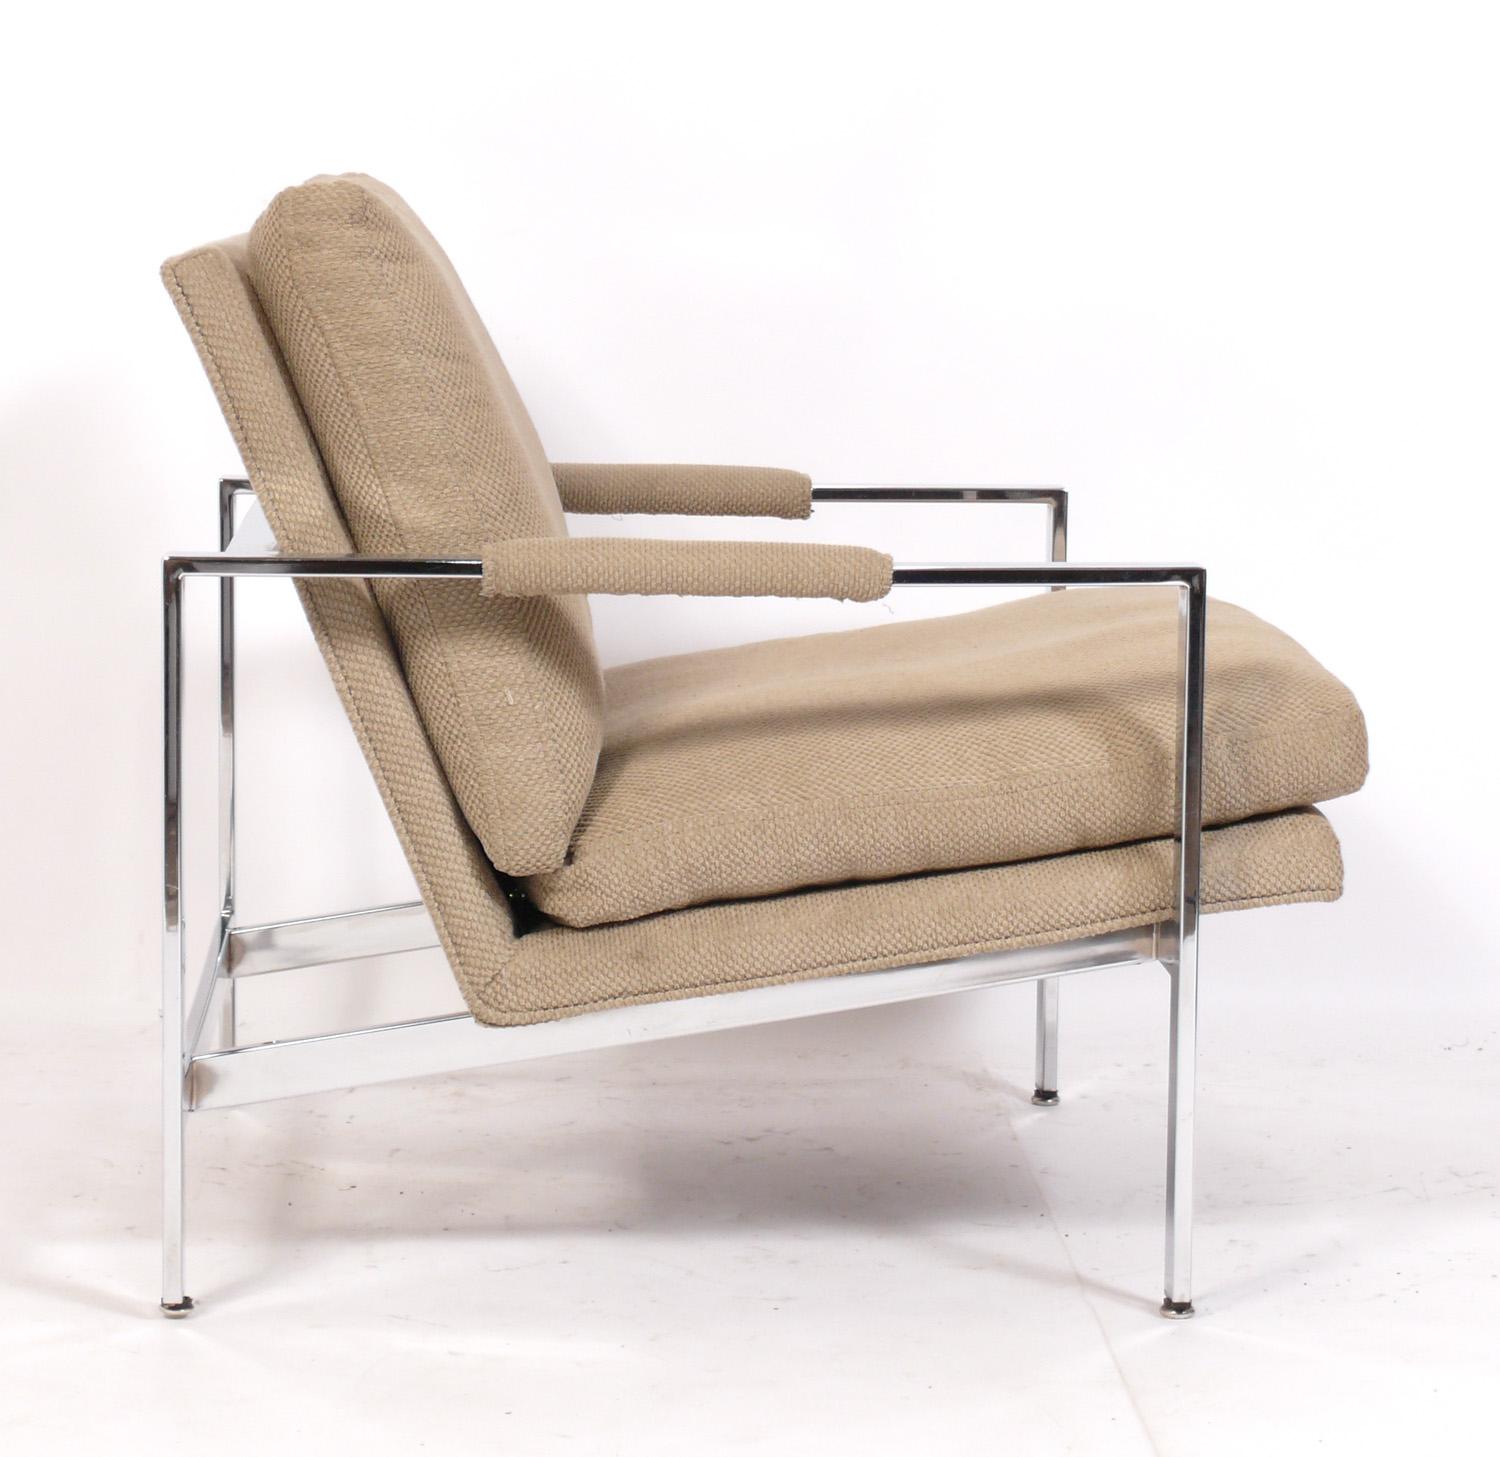 Clean Lined Chrome Mid Century Lounge Chairs, entworfen von Milo Baughman für Thayer Coggin, amerikanisch, ca. 1960er Jahre. Diese Stühle werden gerade neu gepolstert und können mit Ihrem Stoff ergänzt werden. Schicken Sie uns bitte nach dem Kauf 10